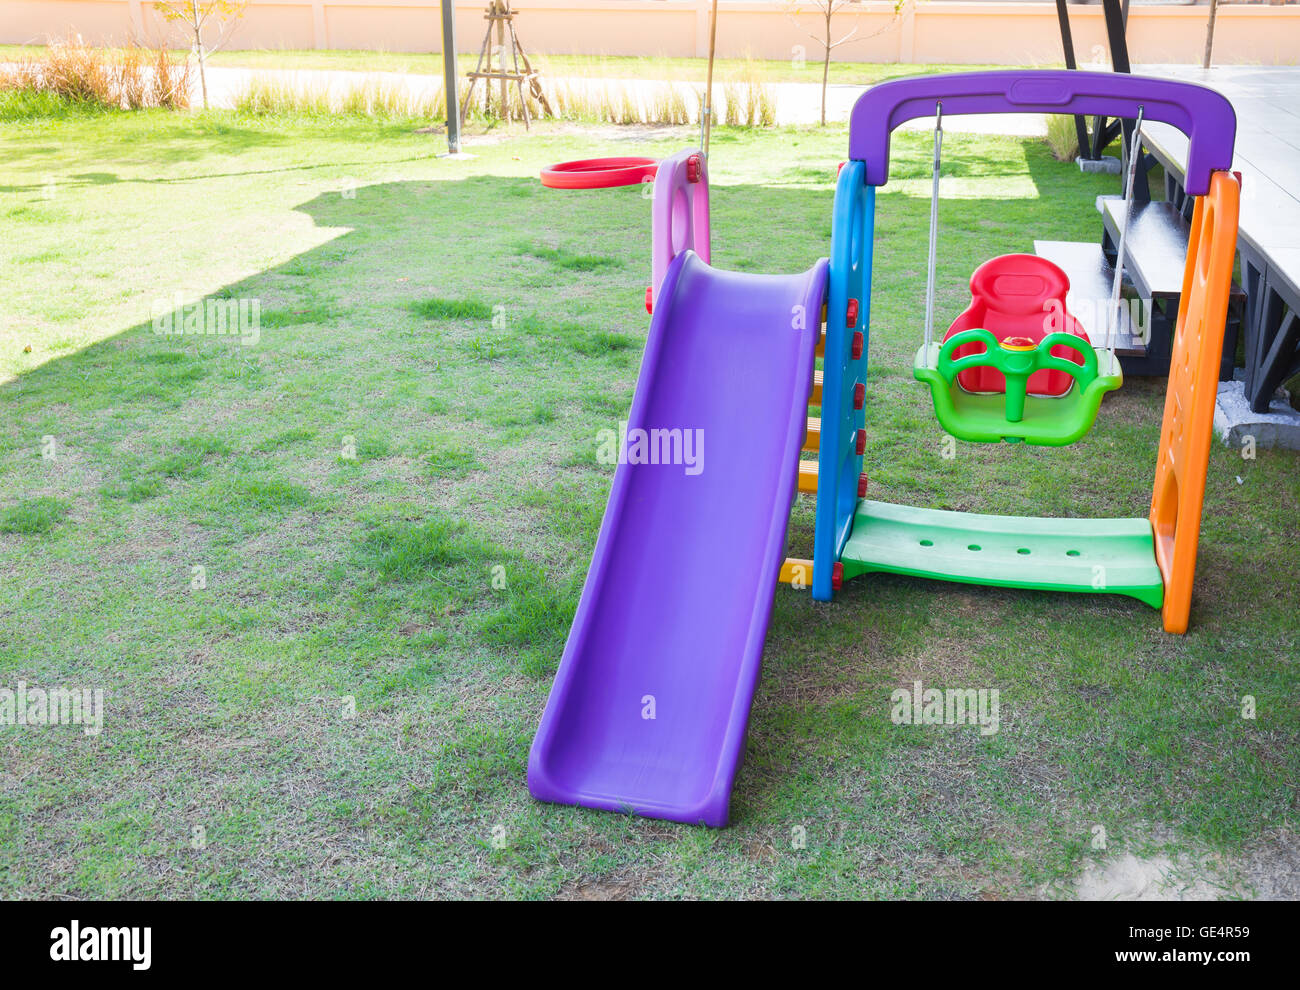 Children playground on lawn park Stock Photo